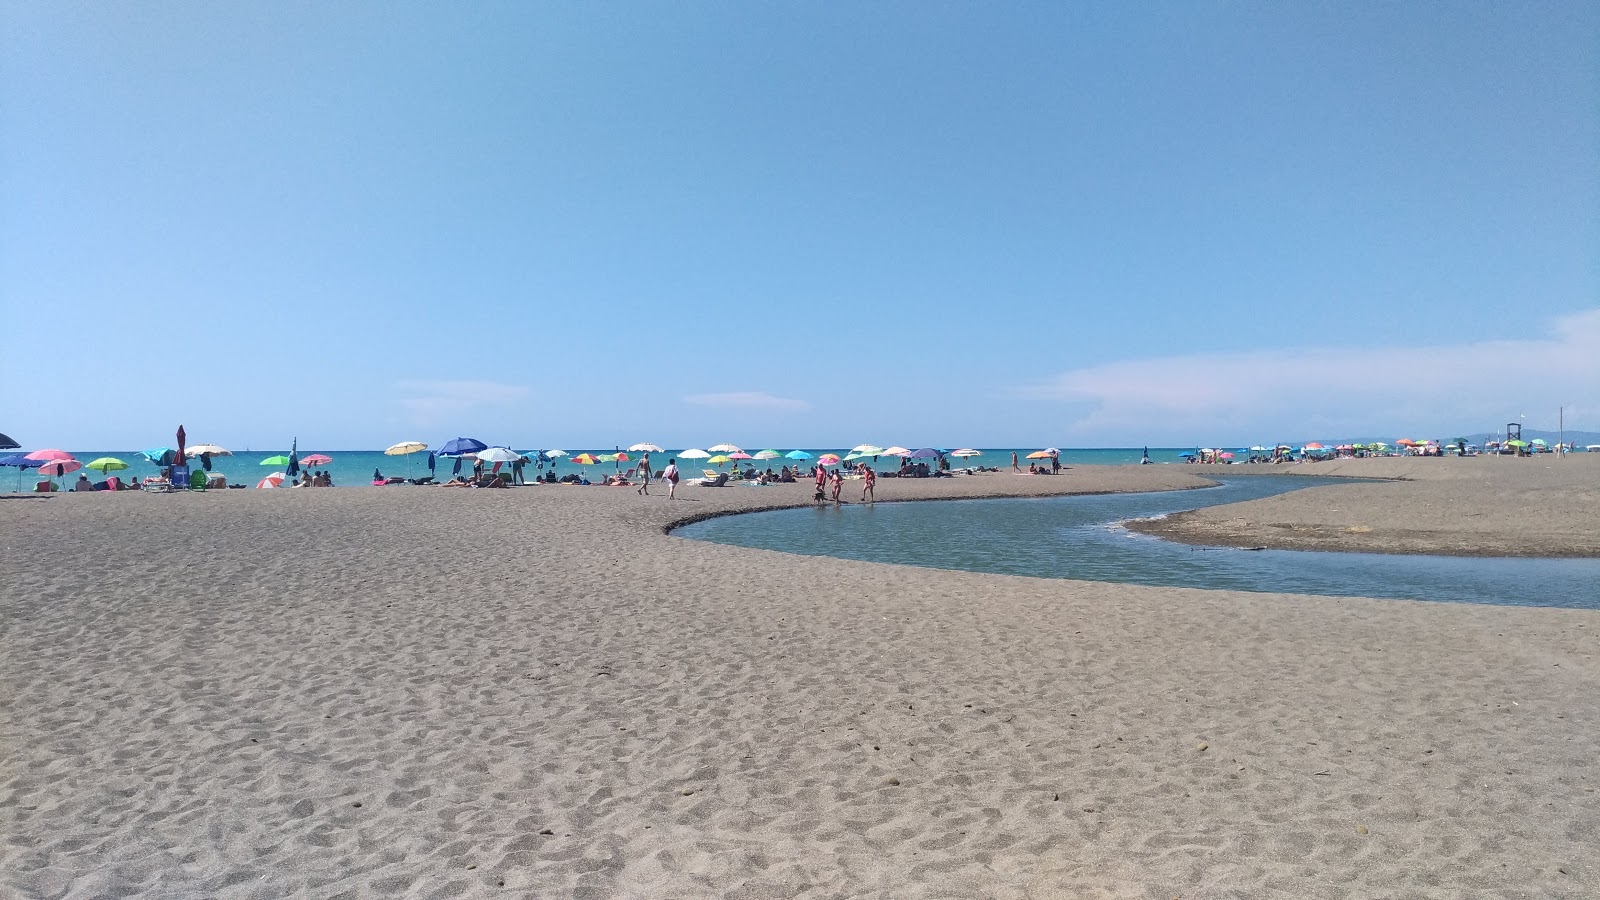 Etruria beach'in fotoğrafı - rahatlamayı sevenler arasında popüler bir yer